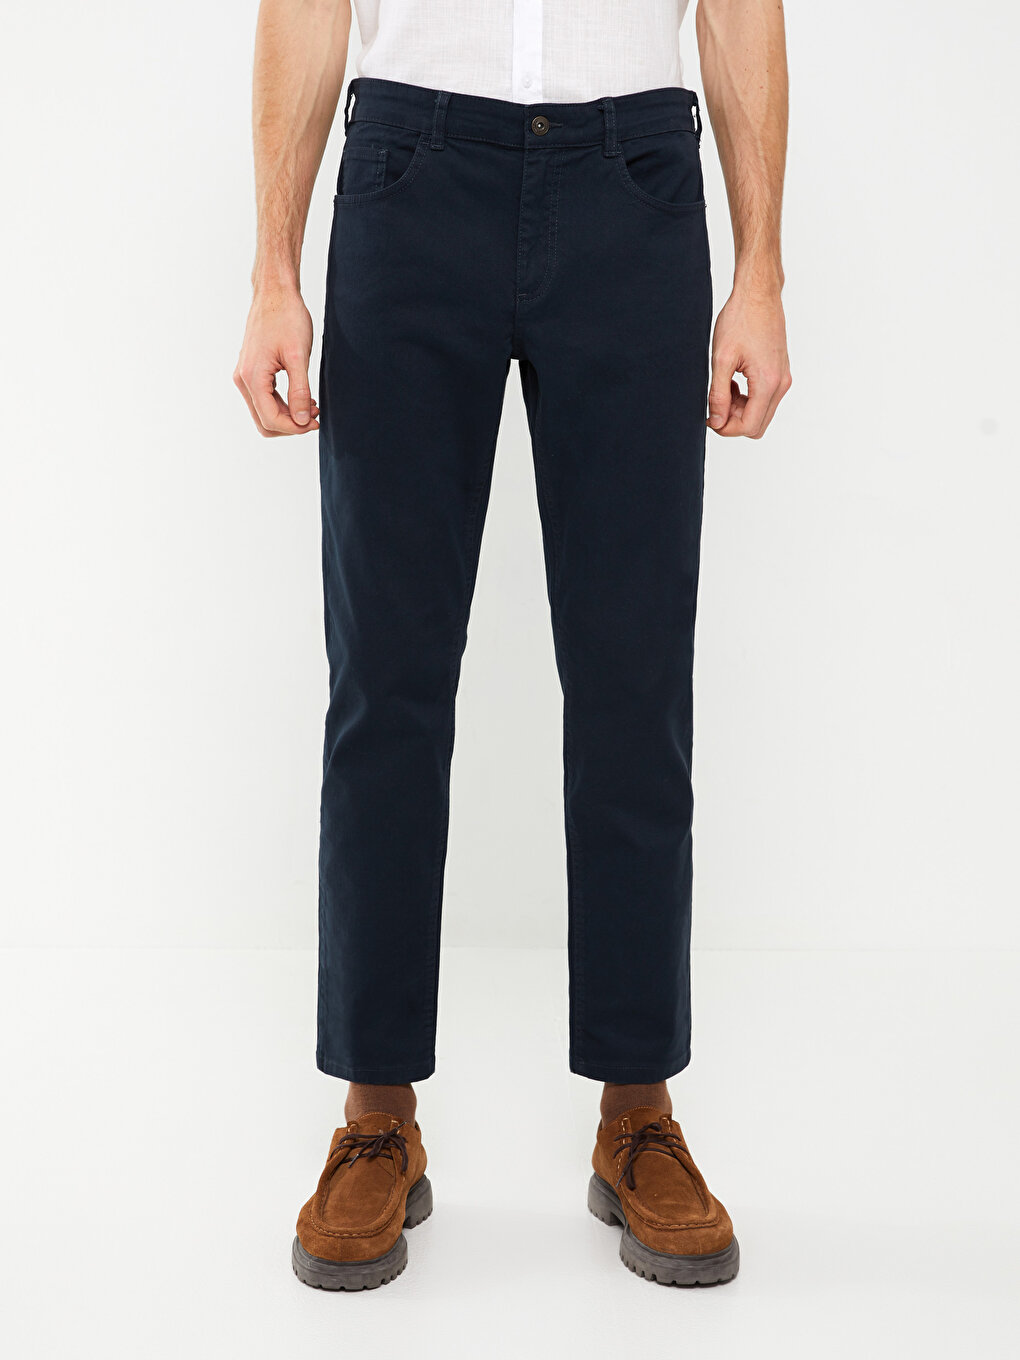 Standard Pattern Men's Chino Trousers -S30765Z8-KN7 - S30765Z8-KN7 - LC ...